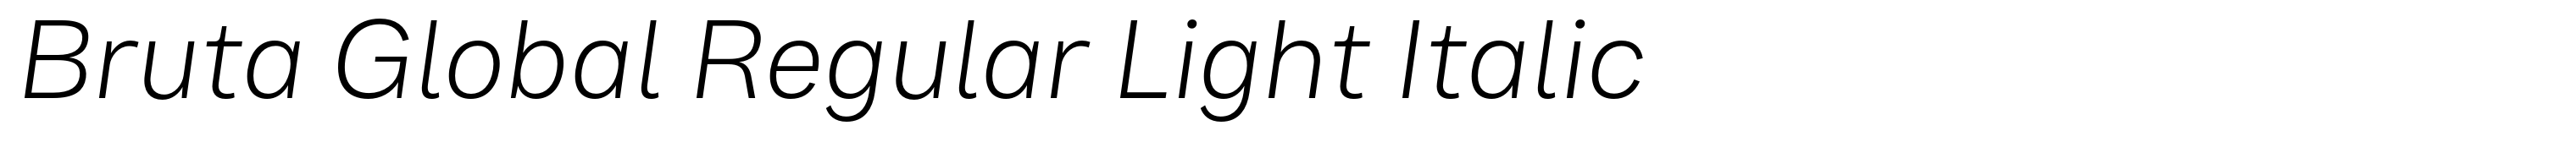 Bruta Global Regular Light Italic